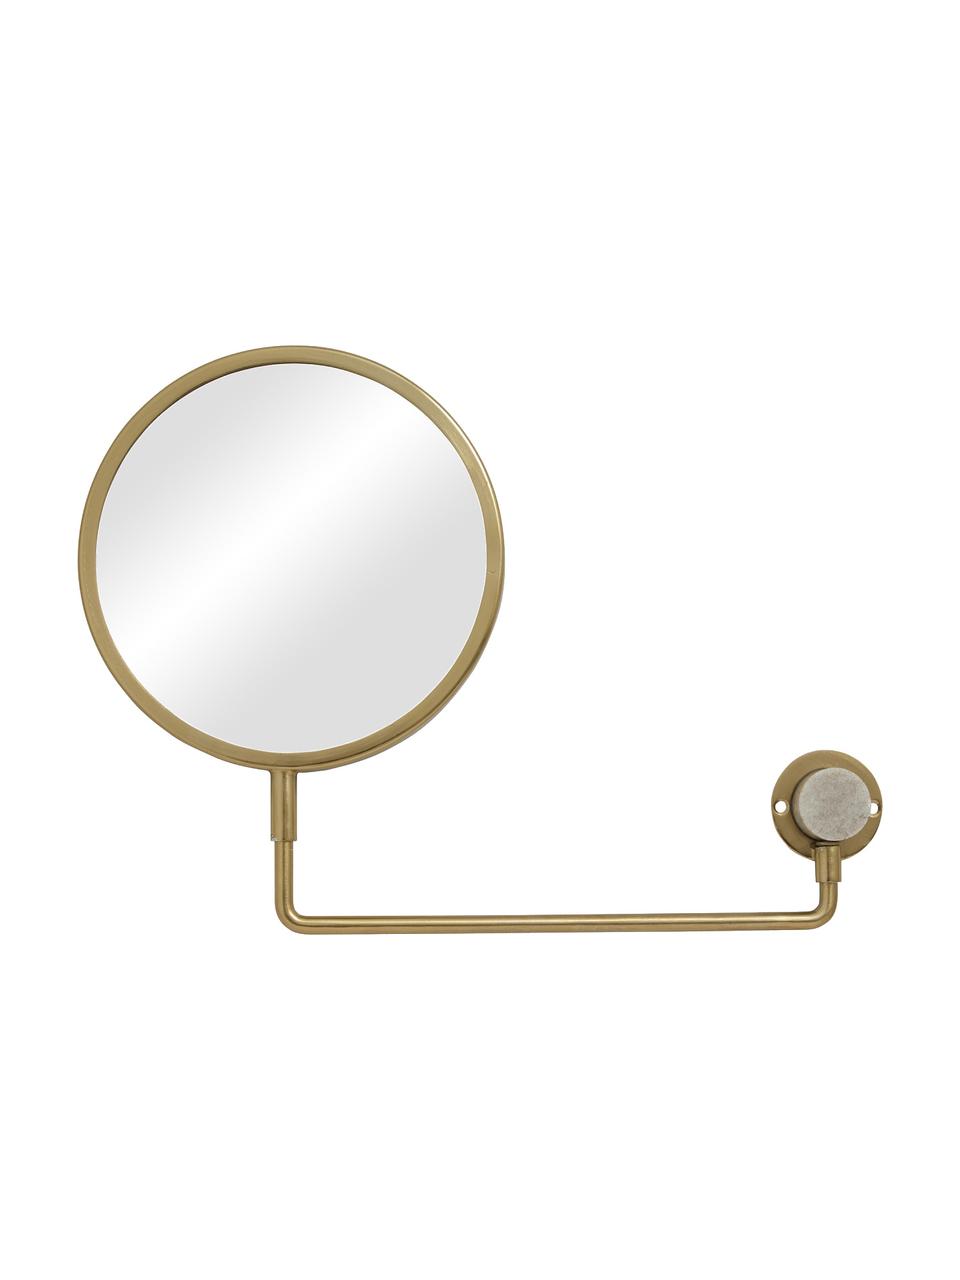 Verstellbarer Wandspiegel Tesia mit Vergrösserung, Rahmen: Metall, Spiegelfläche: Spiegelglas, Dekor: Marmor, Goldfarben, B 39 x H 27 cm